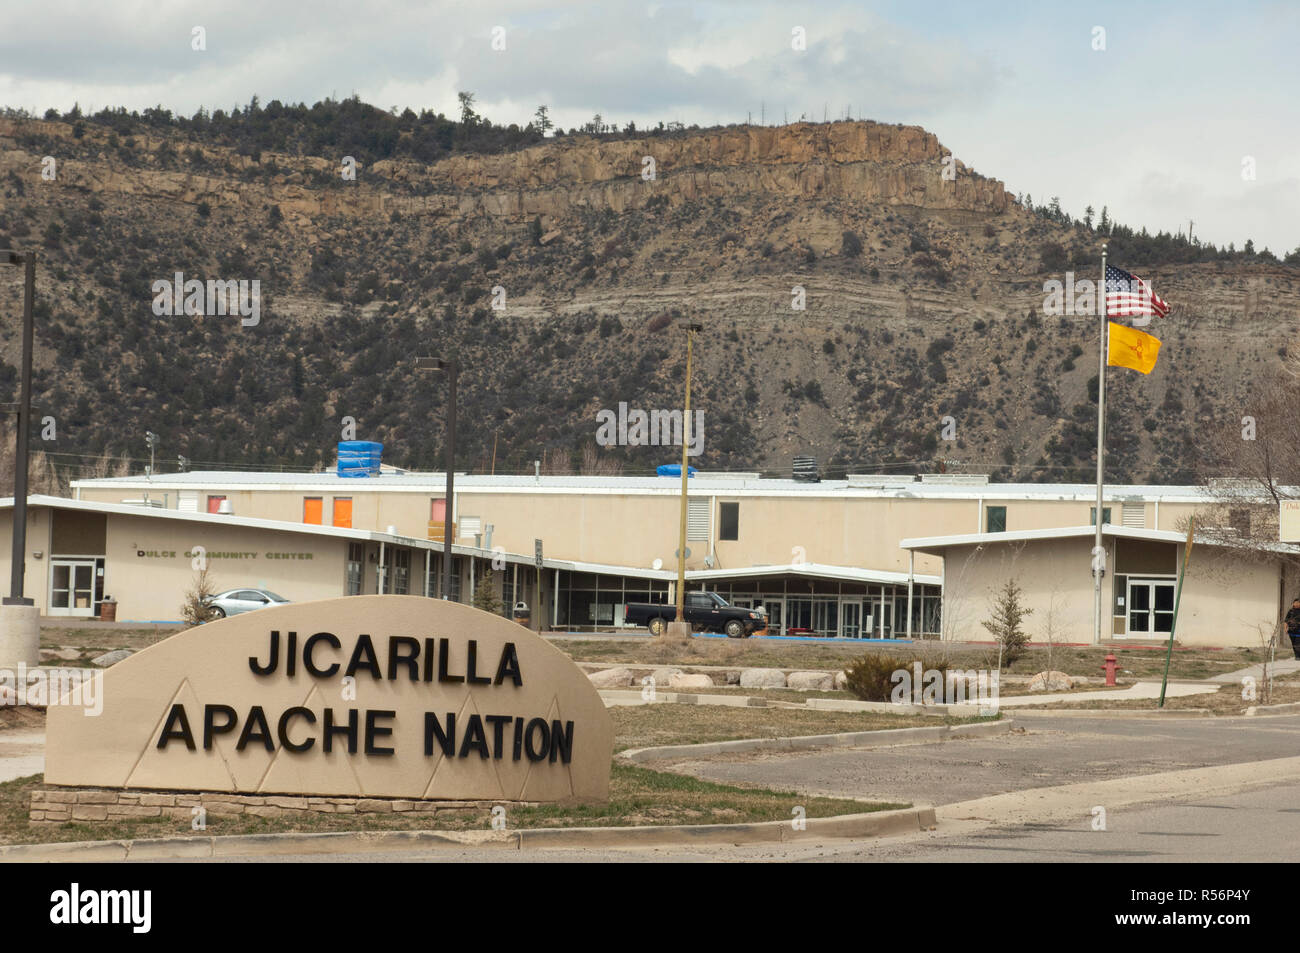 Tribal edifici governativi, Jicarilla Apache Nazione, Dulce, Nuovo Messico. Fotografia digitale Foto Stock